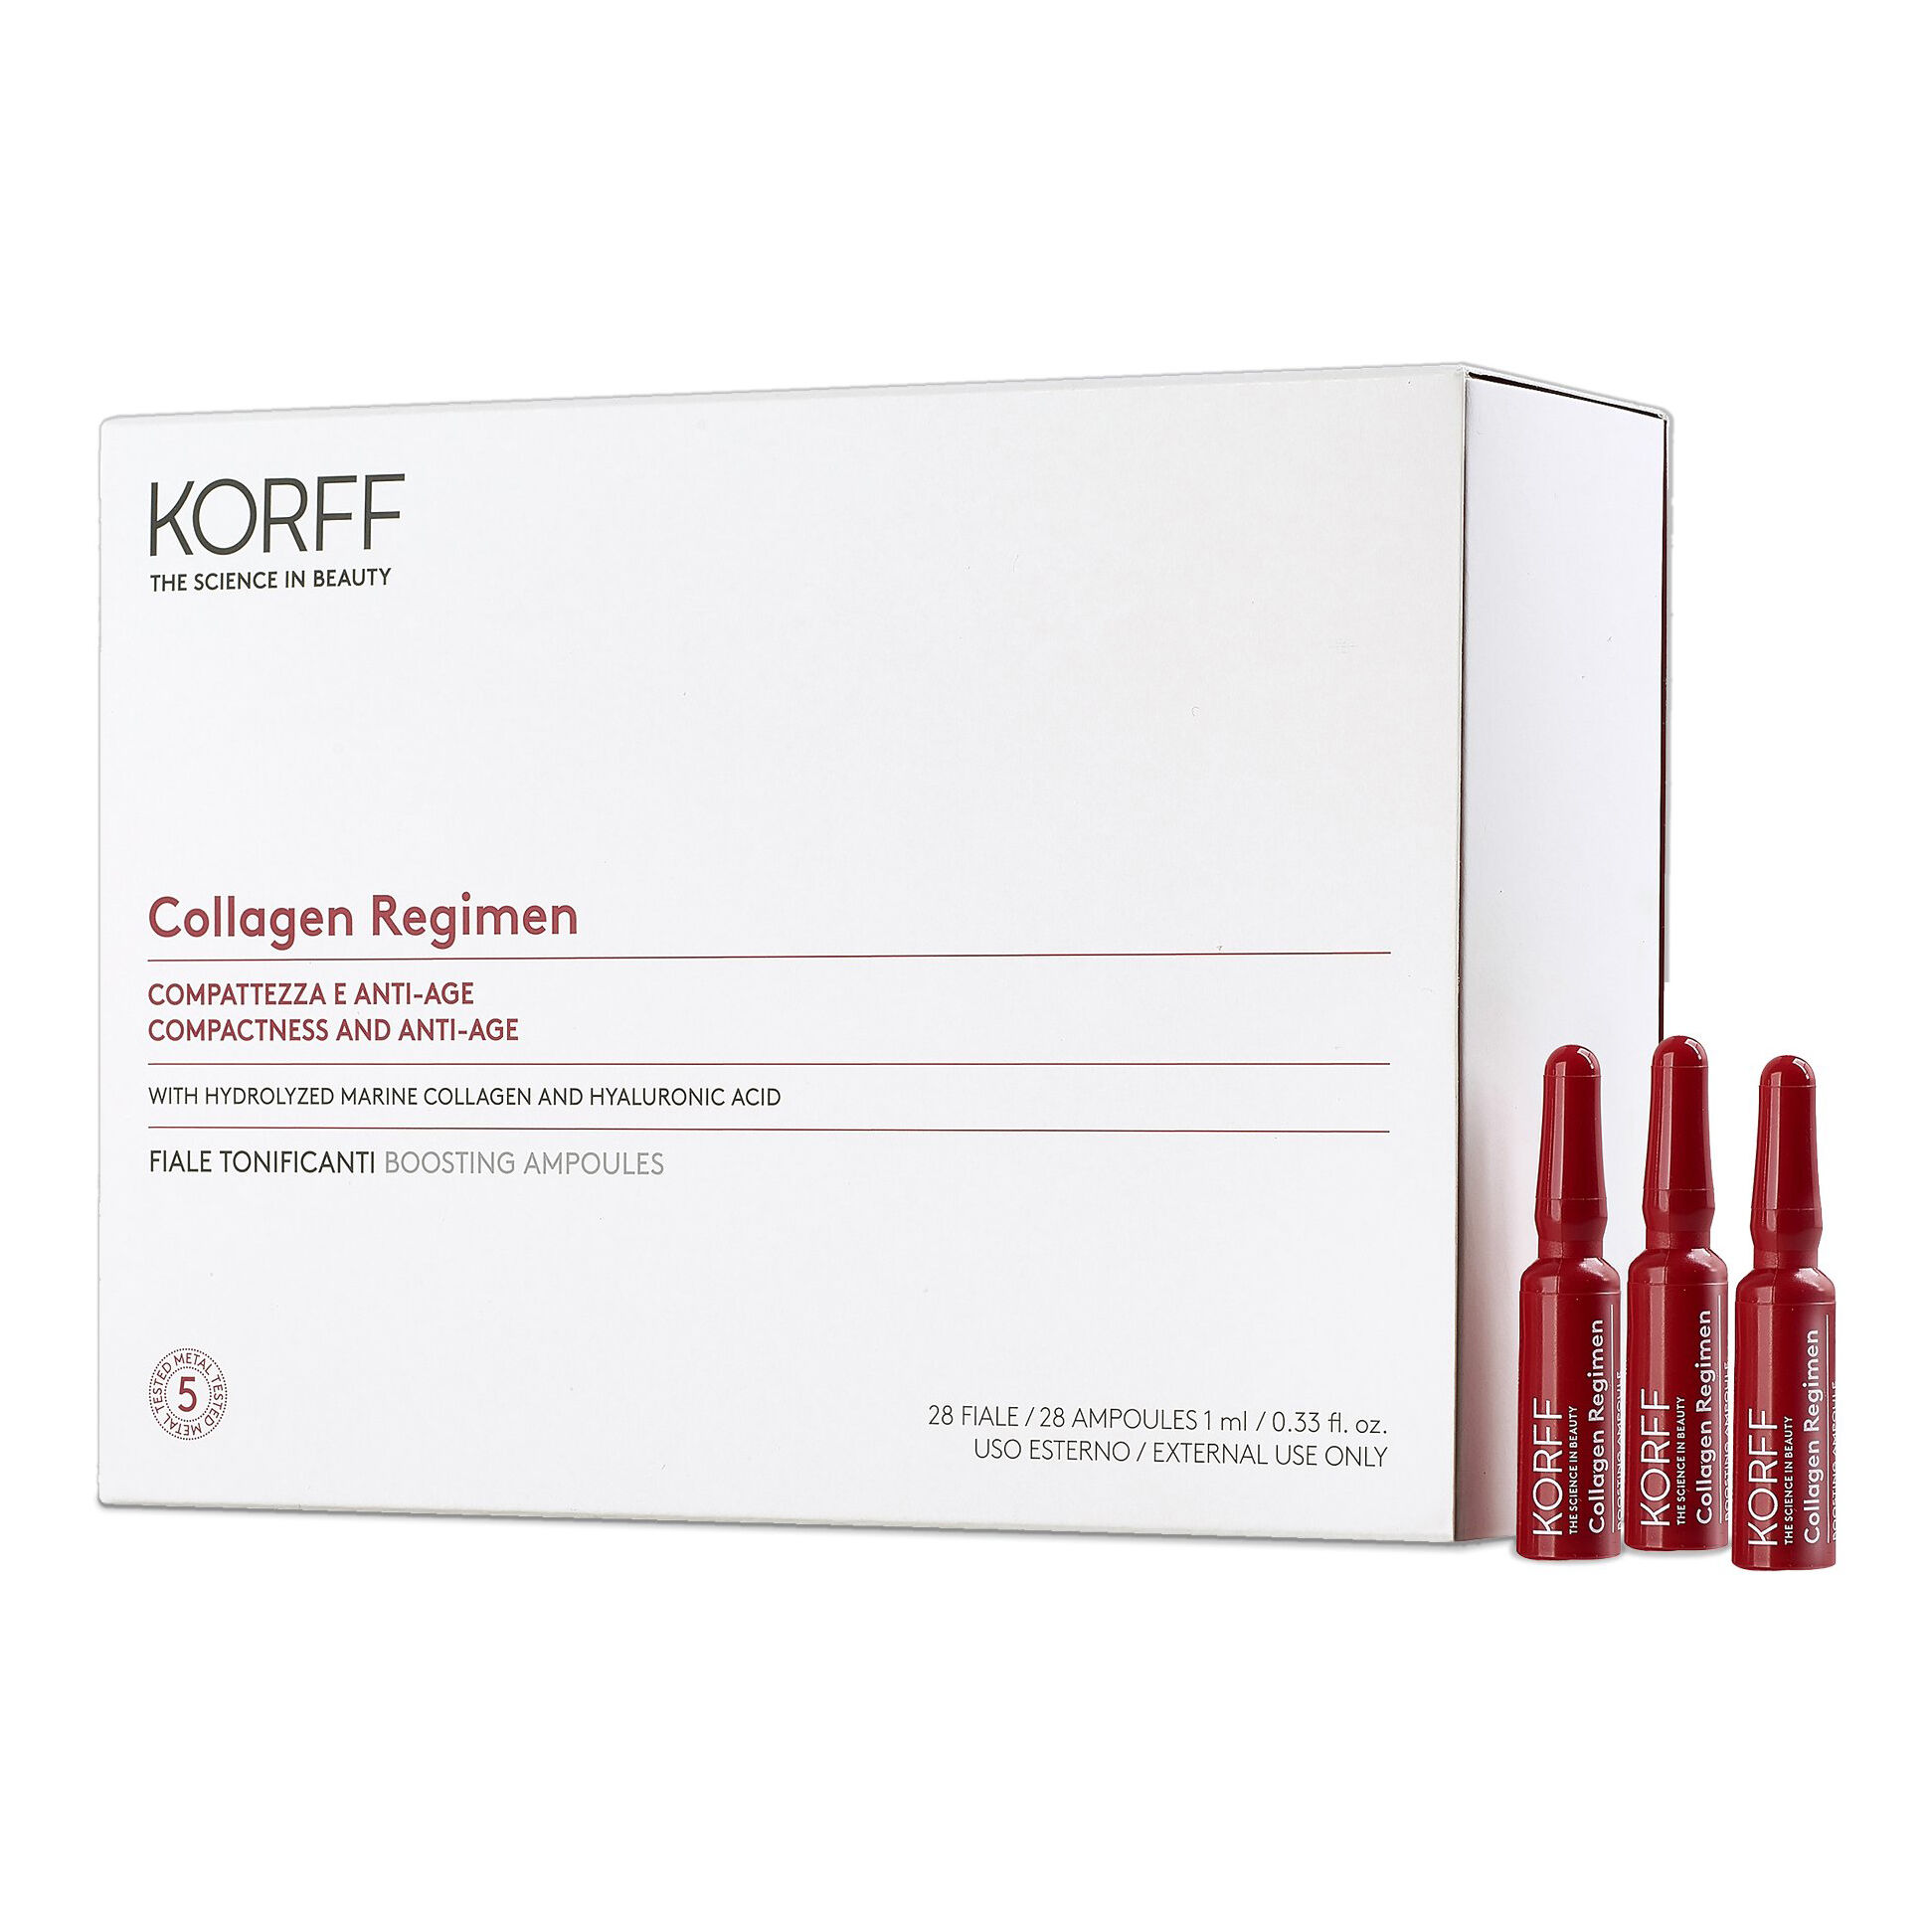 korff collagen regimen compattezza e anti-age 28 fiale